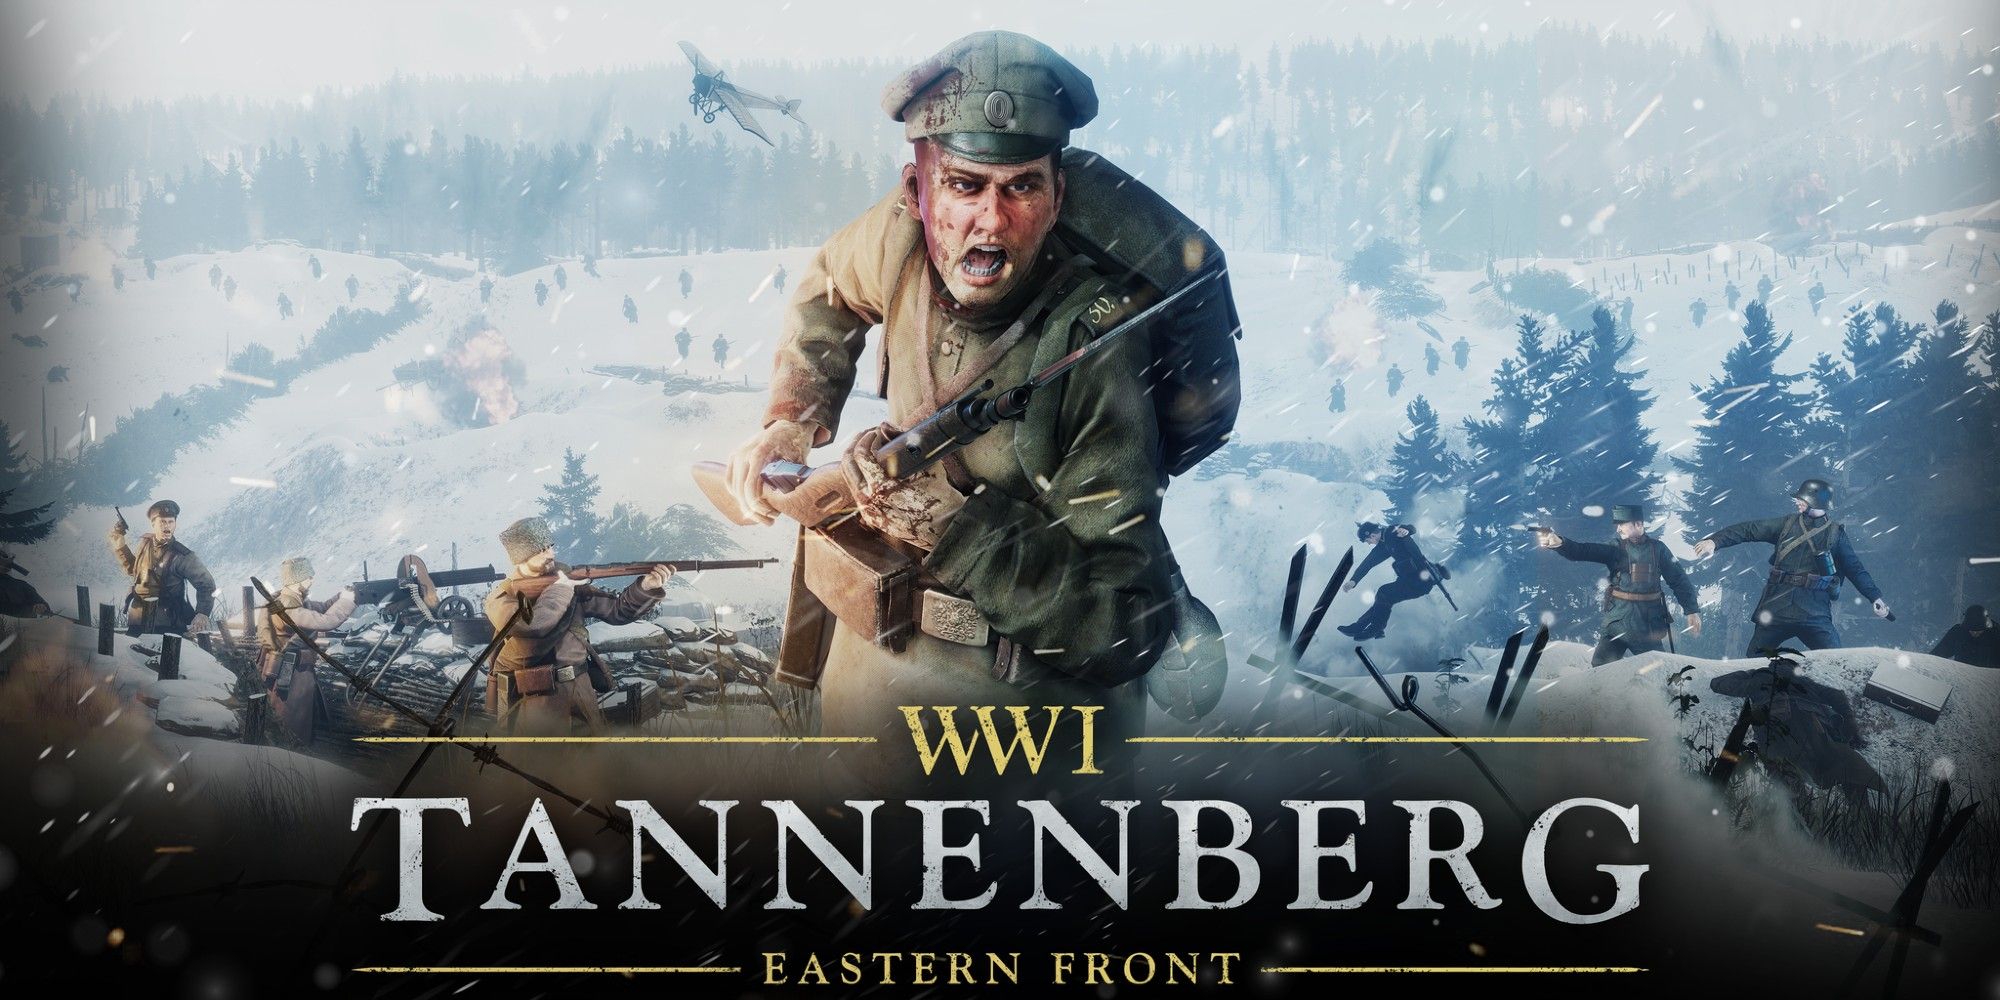 1944 battle of tannenberg line movie